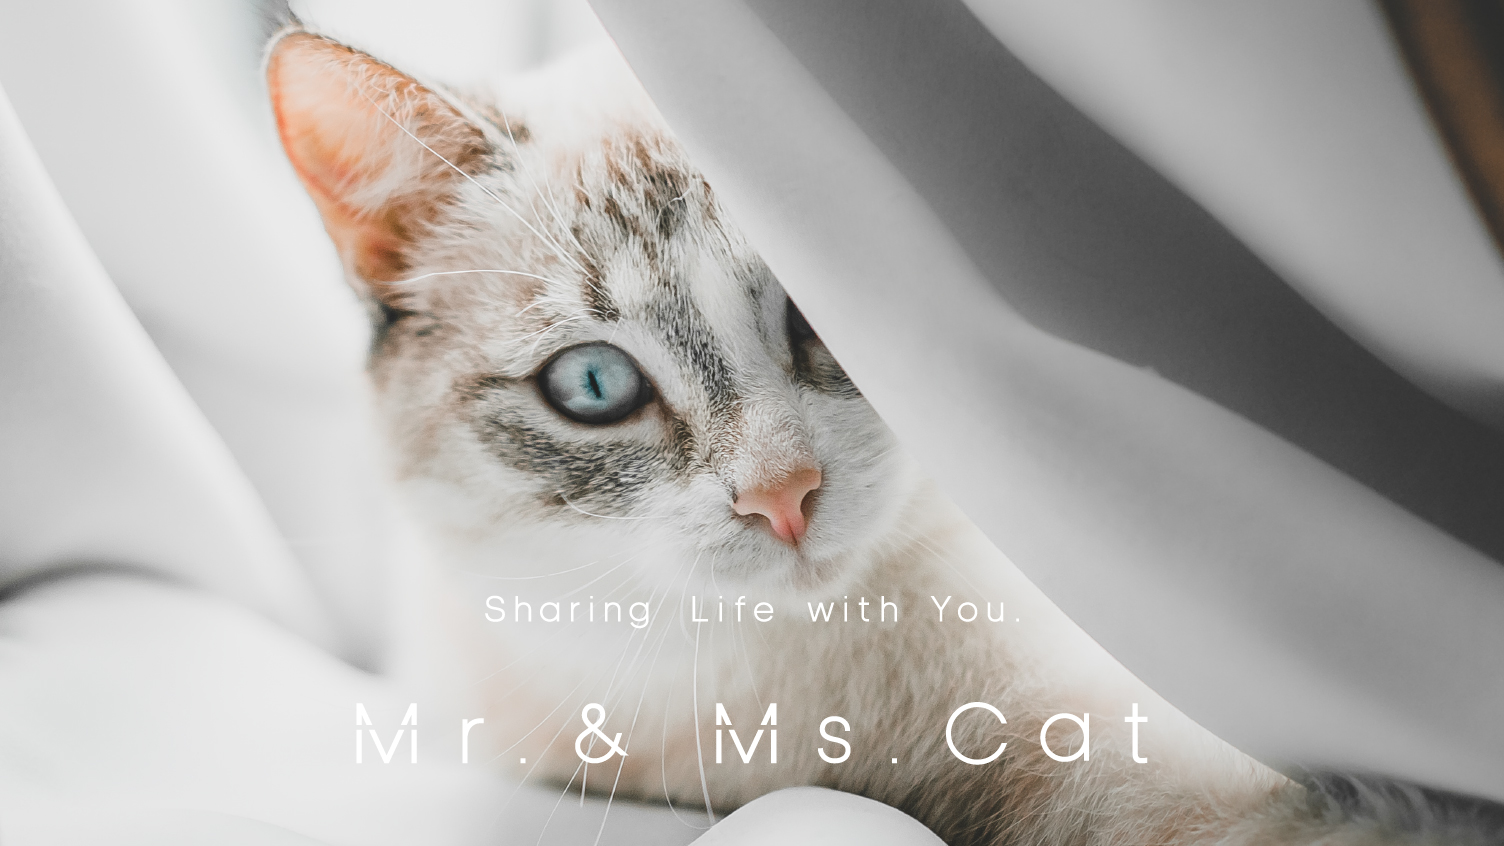 8月8日 世界猫の日に Direct To Cat ブランドが誕生 愛猫家のためのライフスタイルd2cブランド Mr Ms Cat 株式会社 Mr Ms Catのプレスリリース